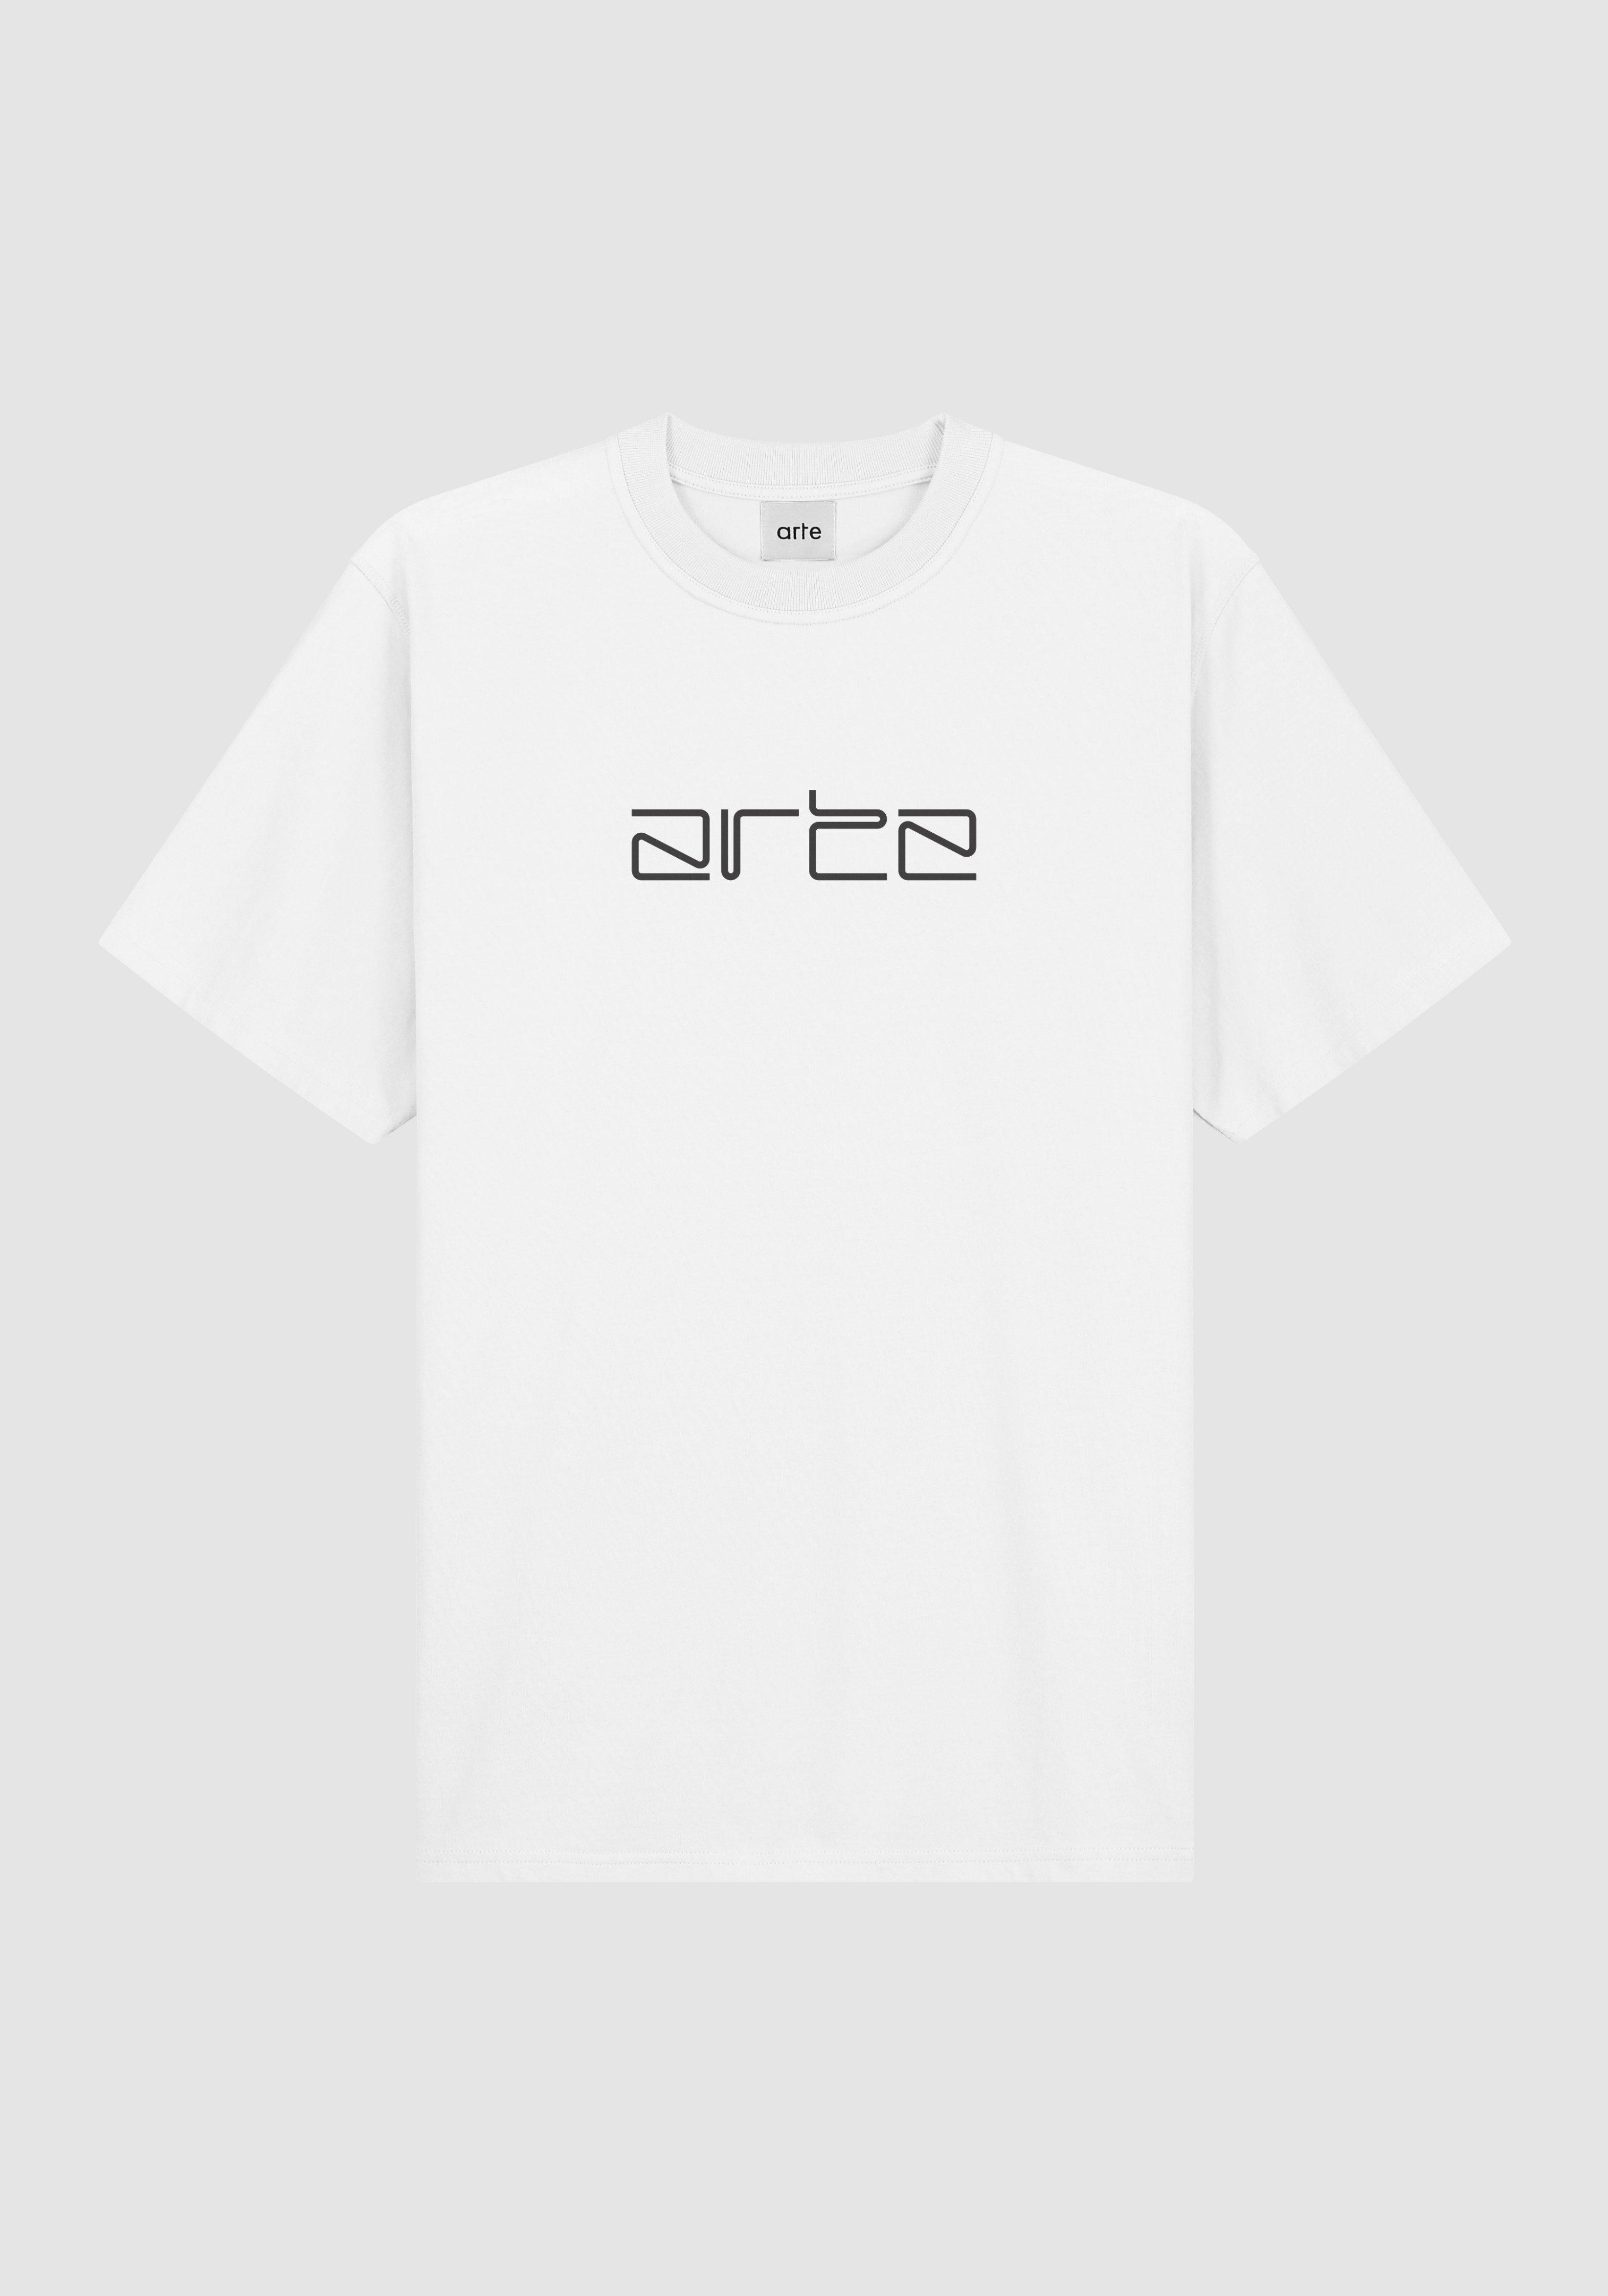 ARTE t-shirt